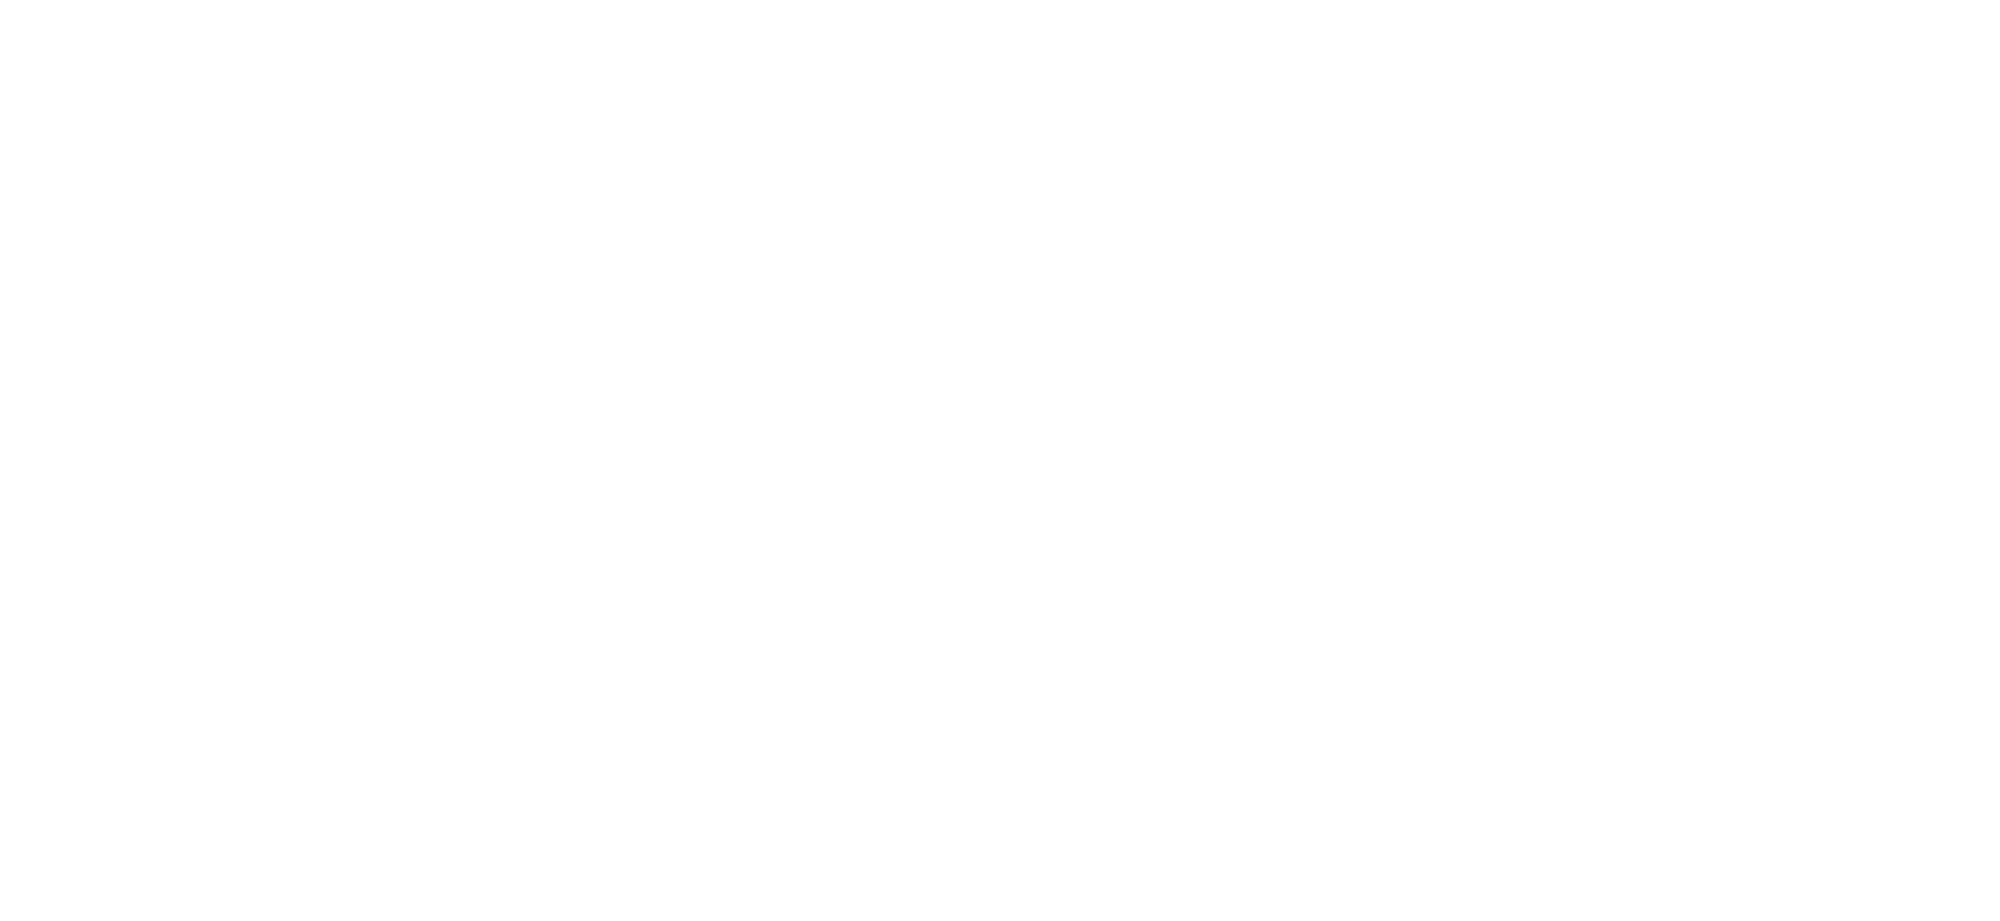 J. Edgar logo